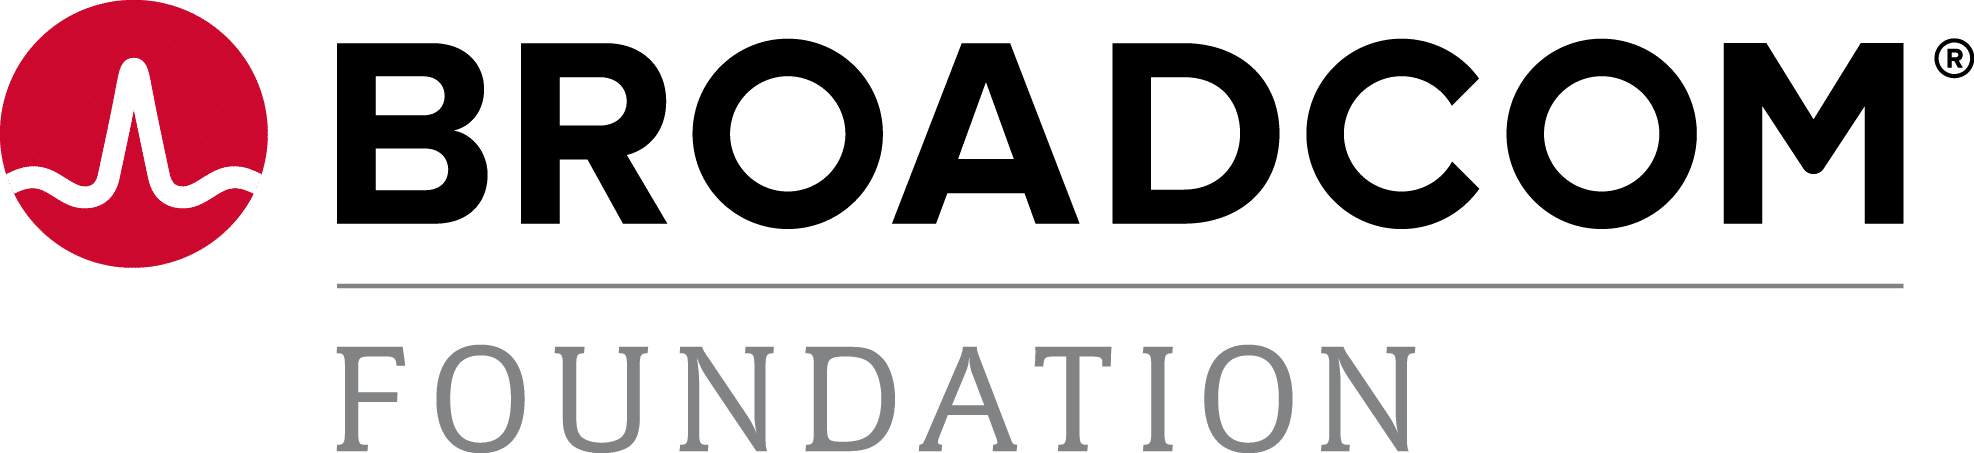 Broadcom_Foundation_Logo_RGB